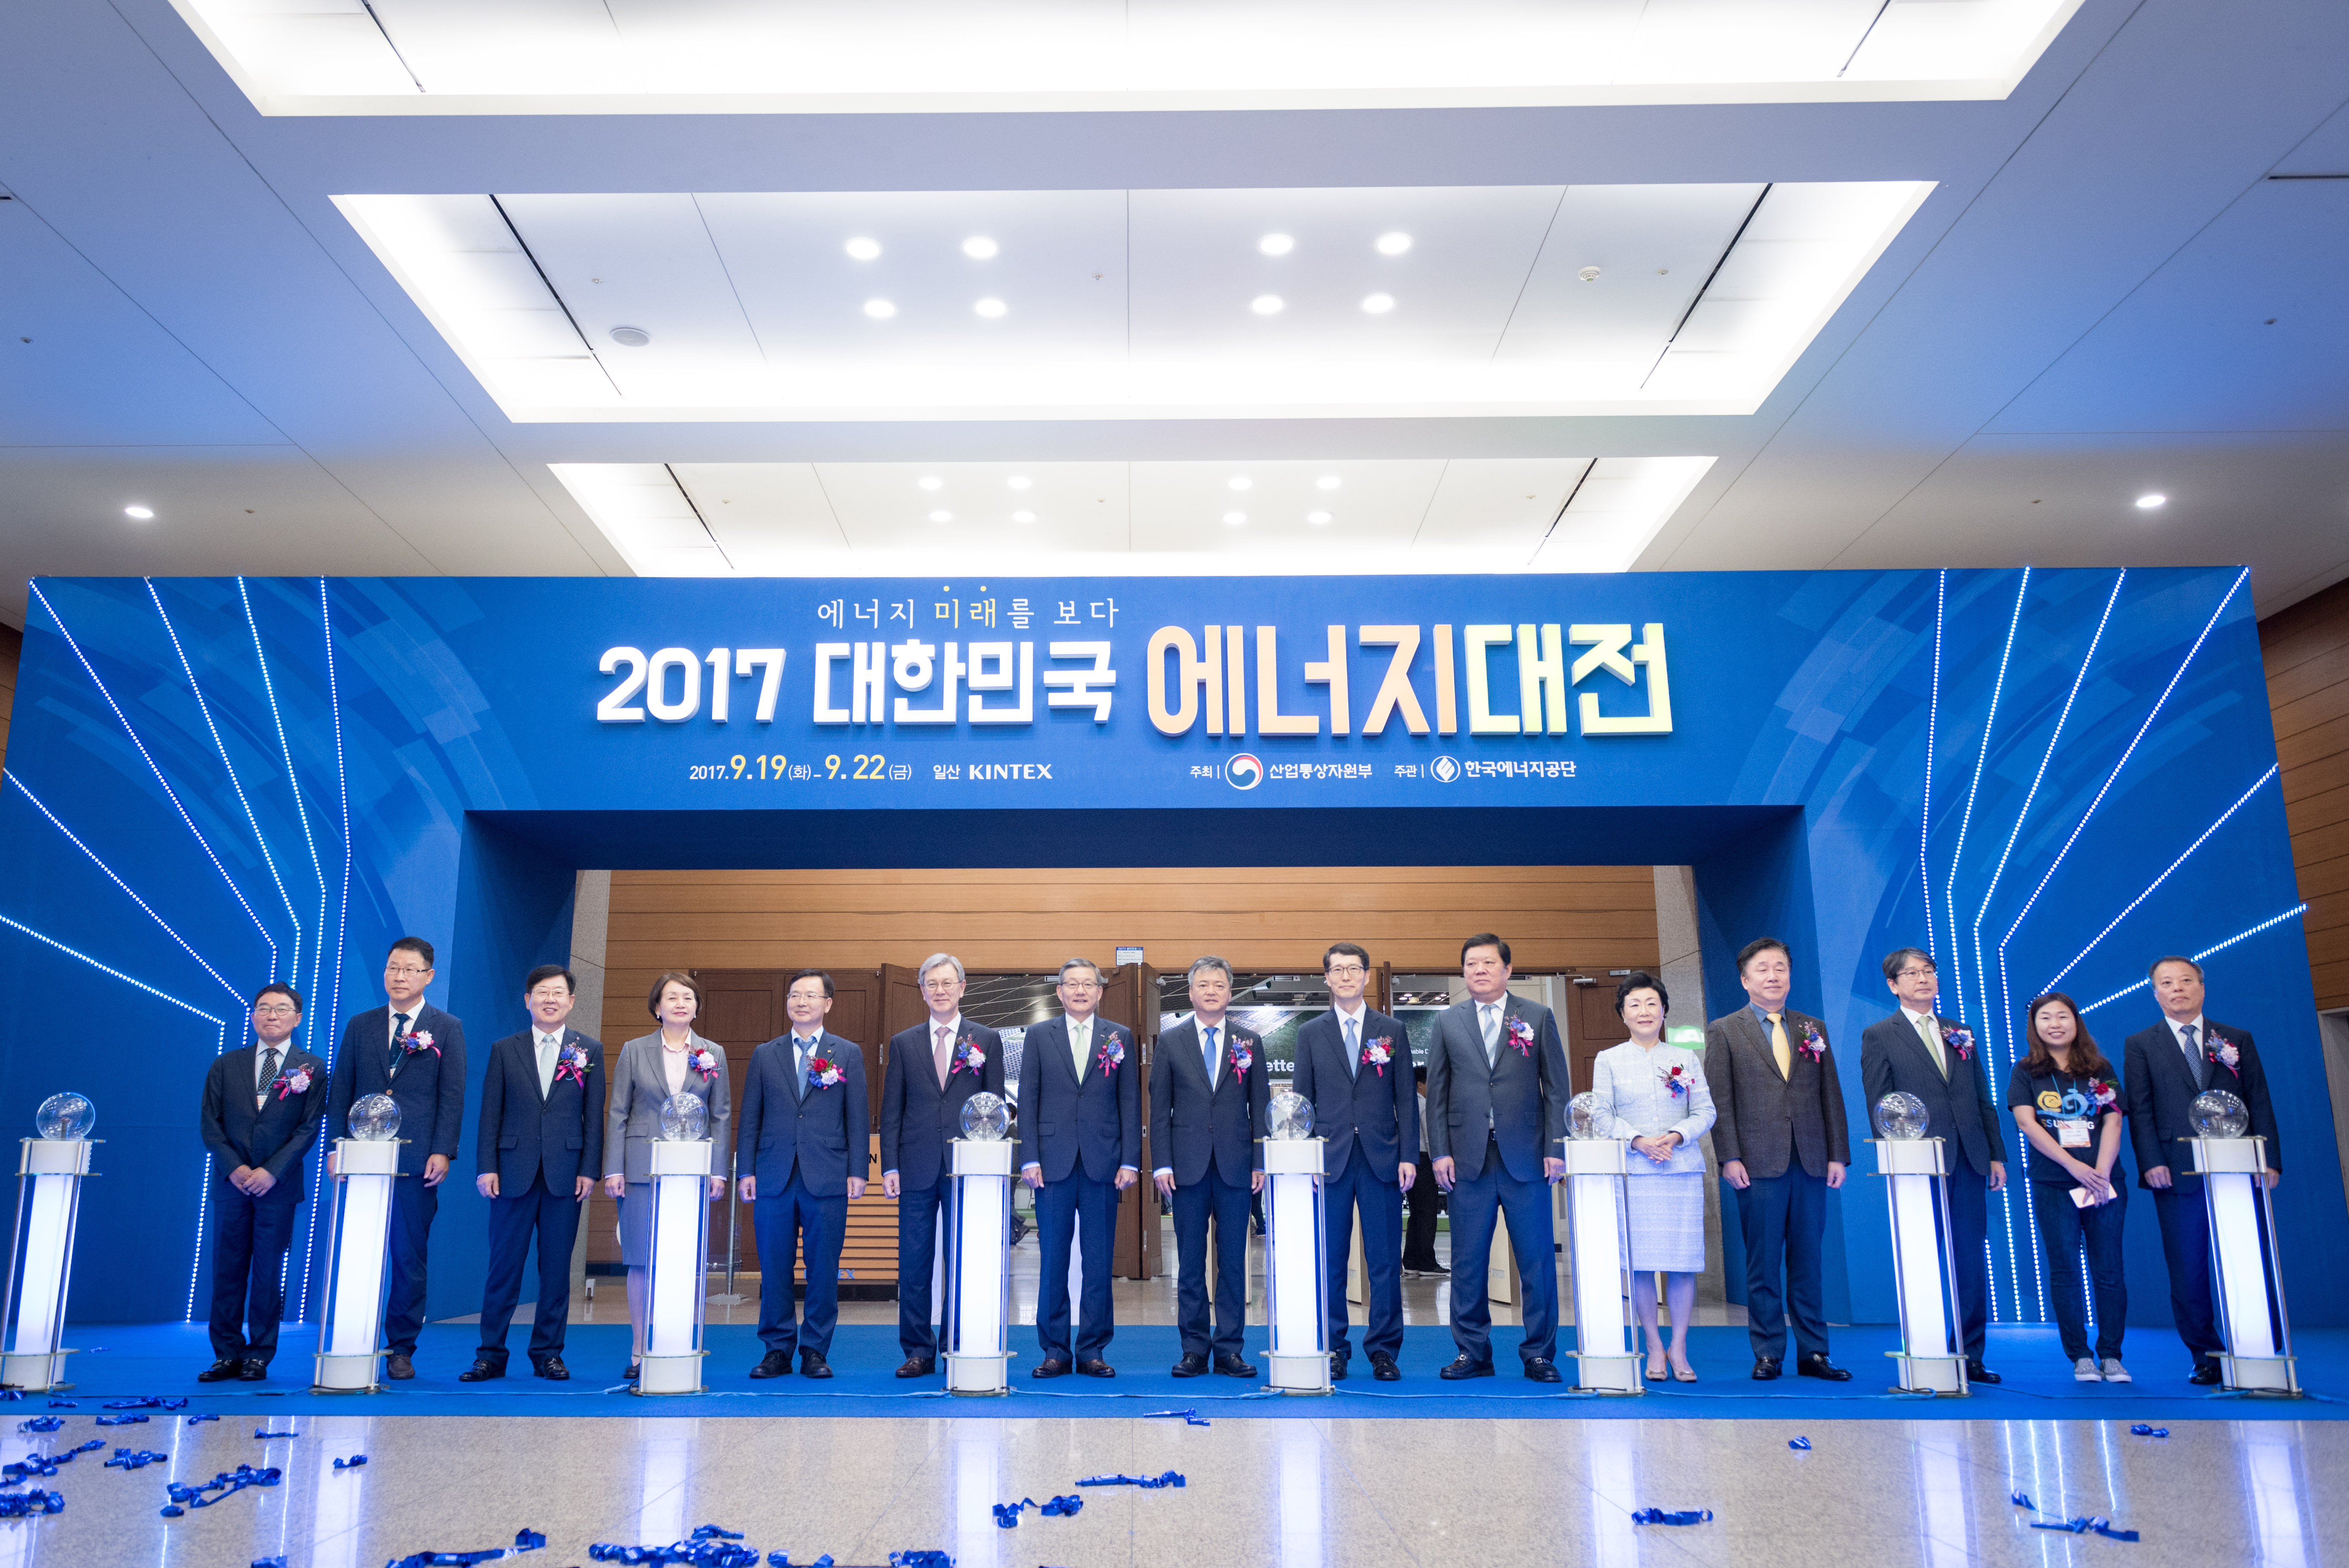 2017 대한민국 에너지대전 개막식 행사